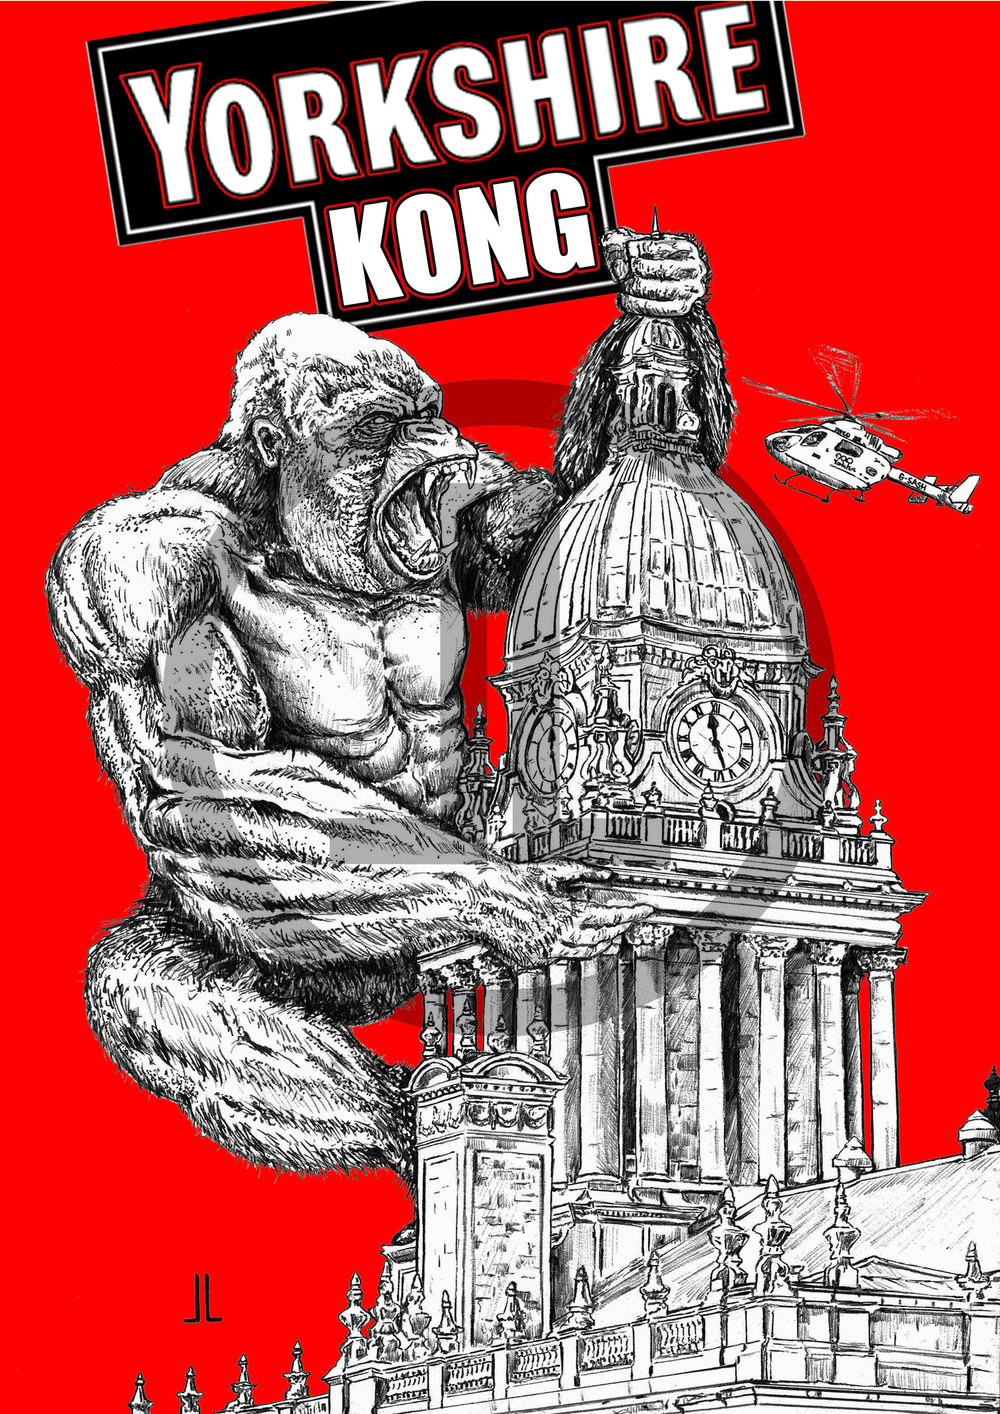 'Yorkshire Kong' - Leeds